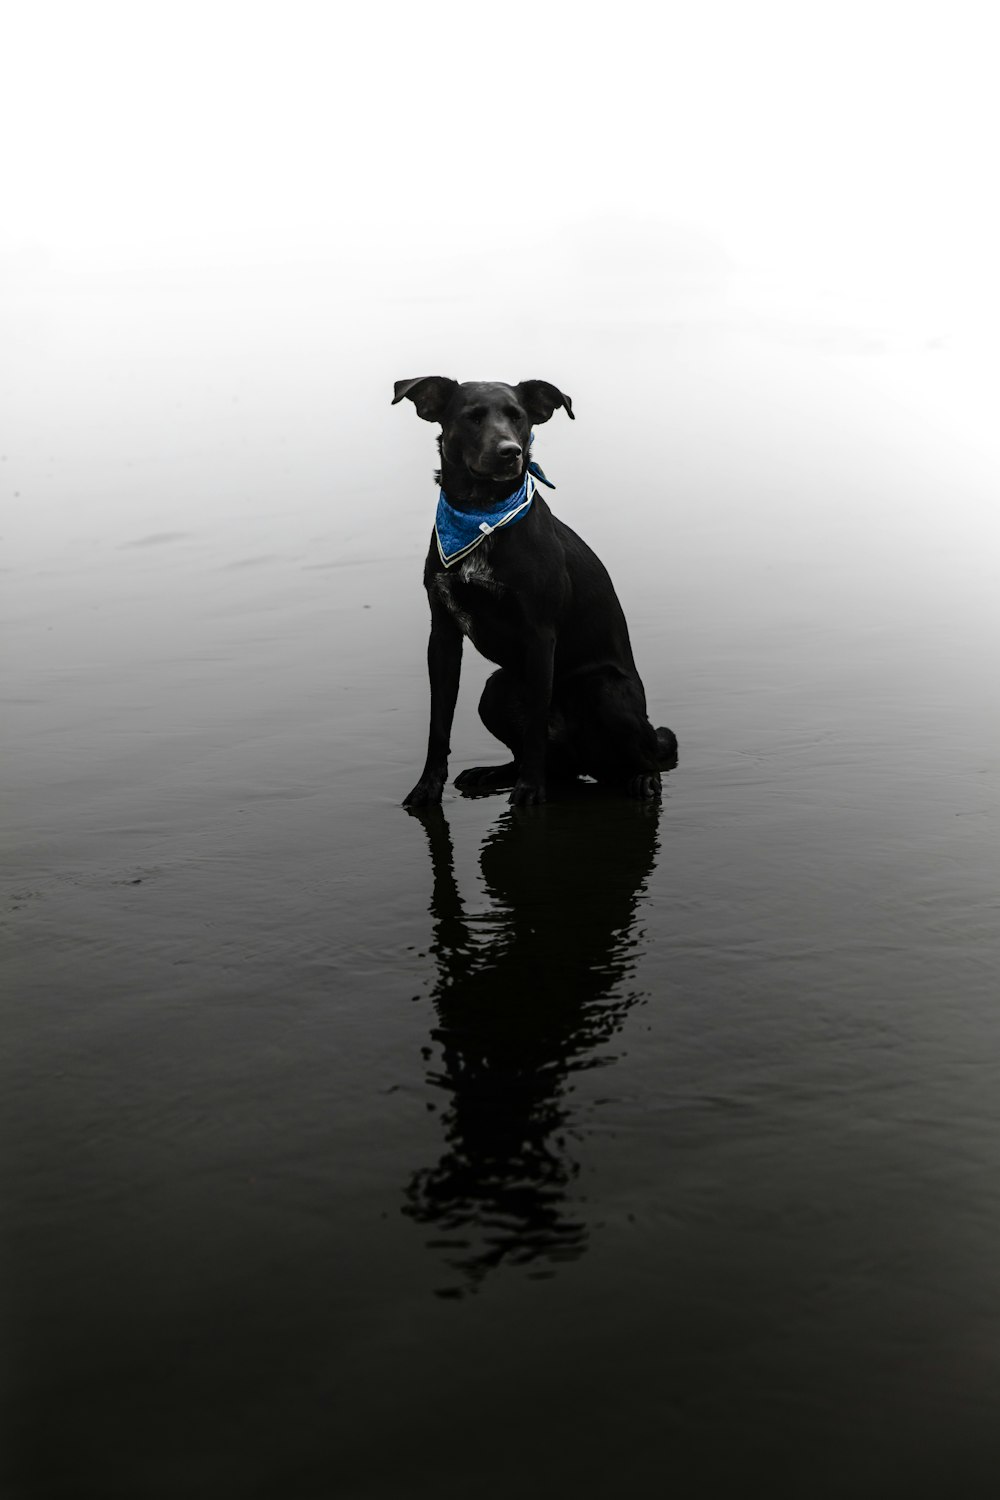 short-coated black dog on water